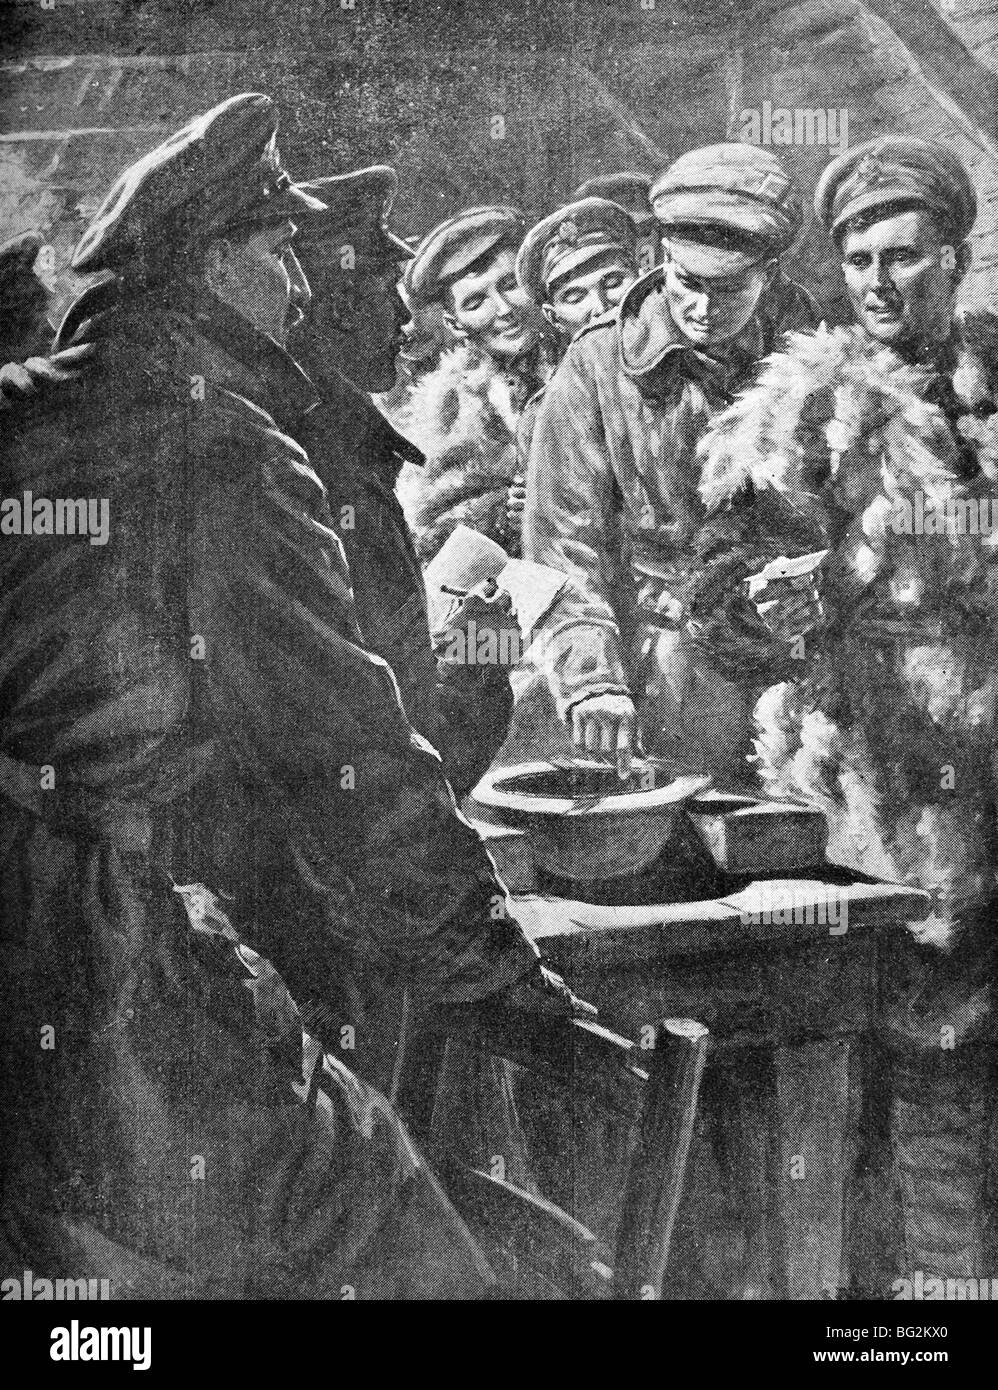 WW1 contemporain illustration montrant les troupes britanniques de tirage au sort en France en 1916 pour déterminer qui obtient 'quitter' à Noël. Banque D'Images